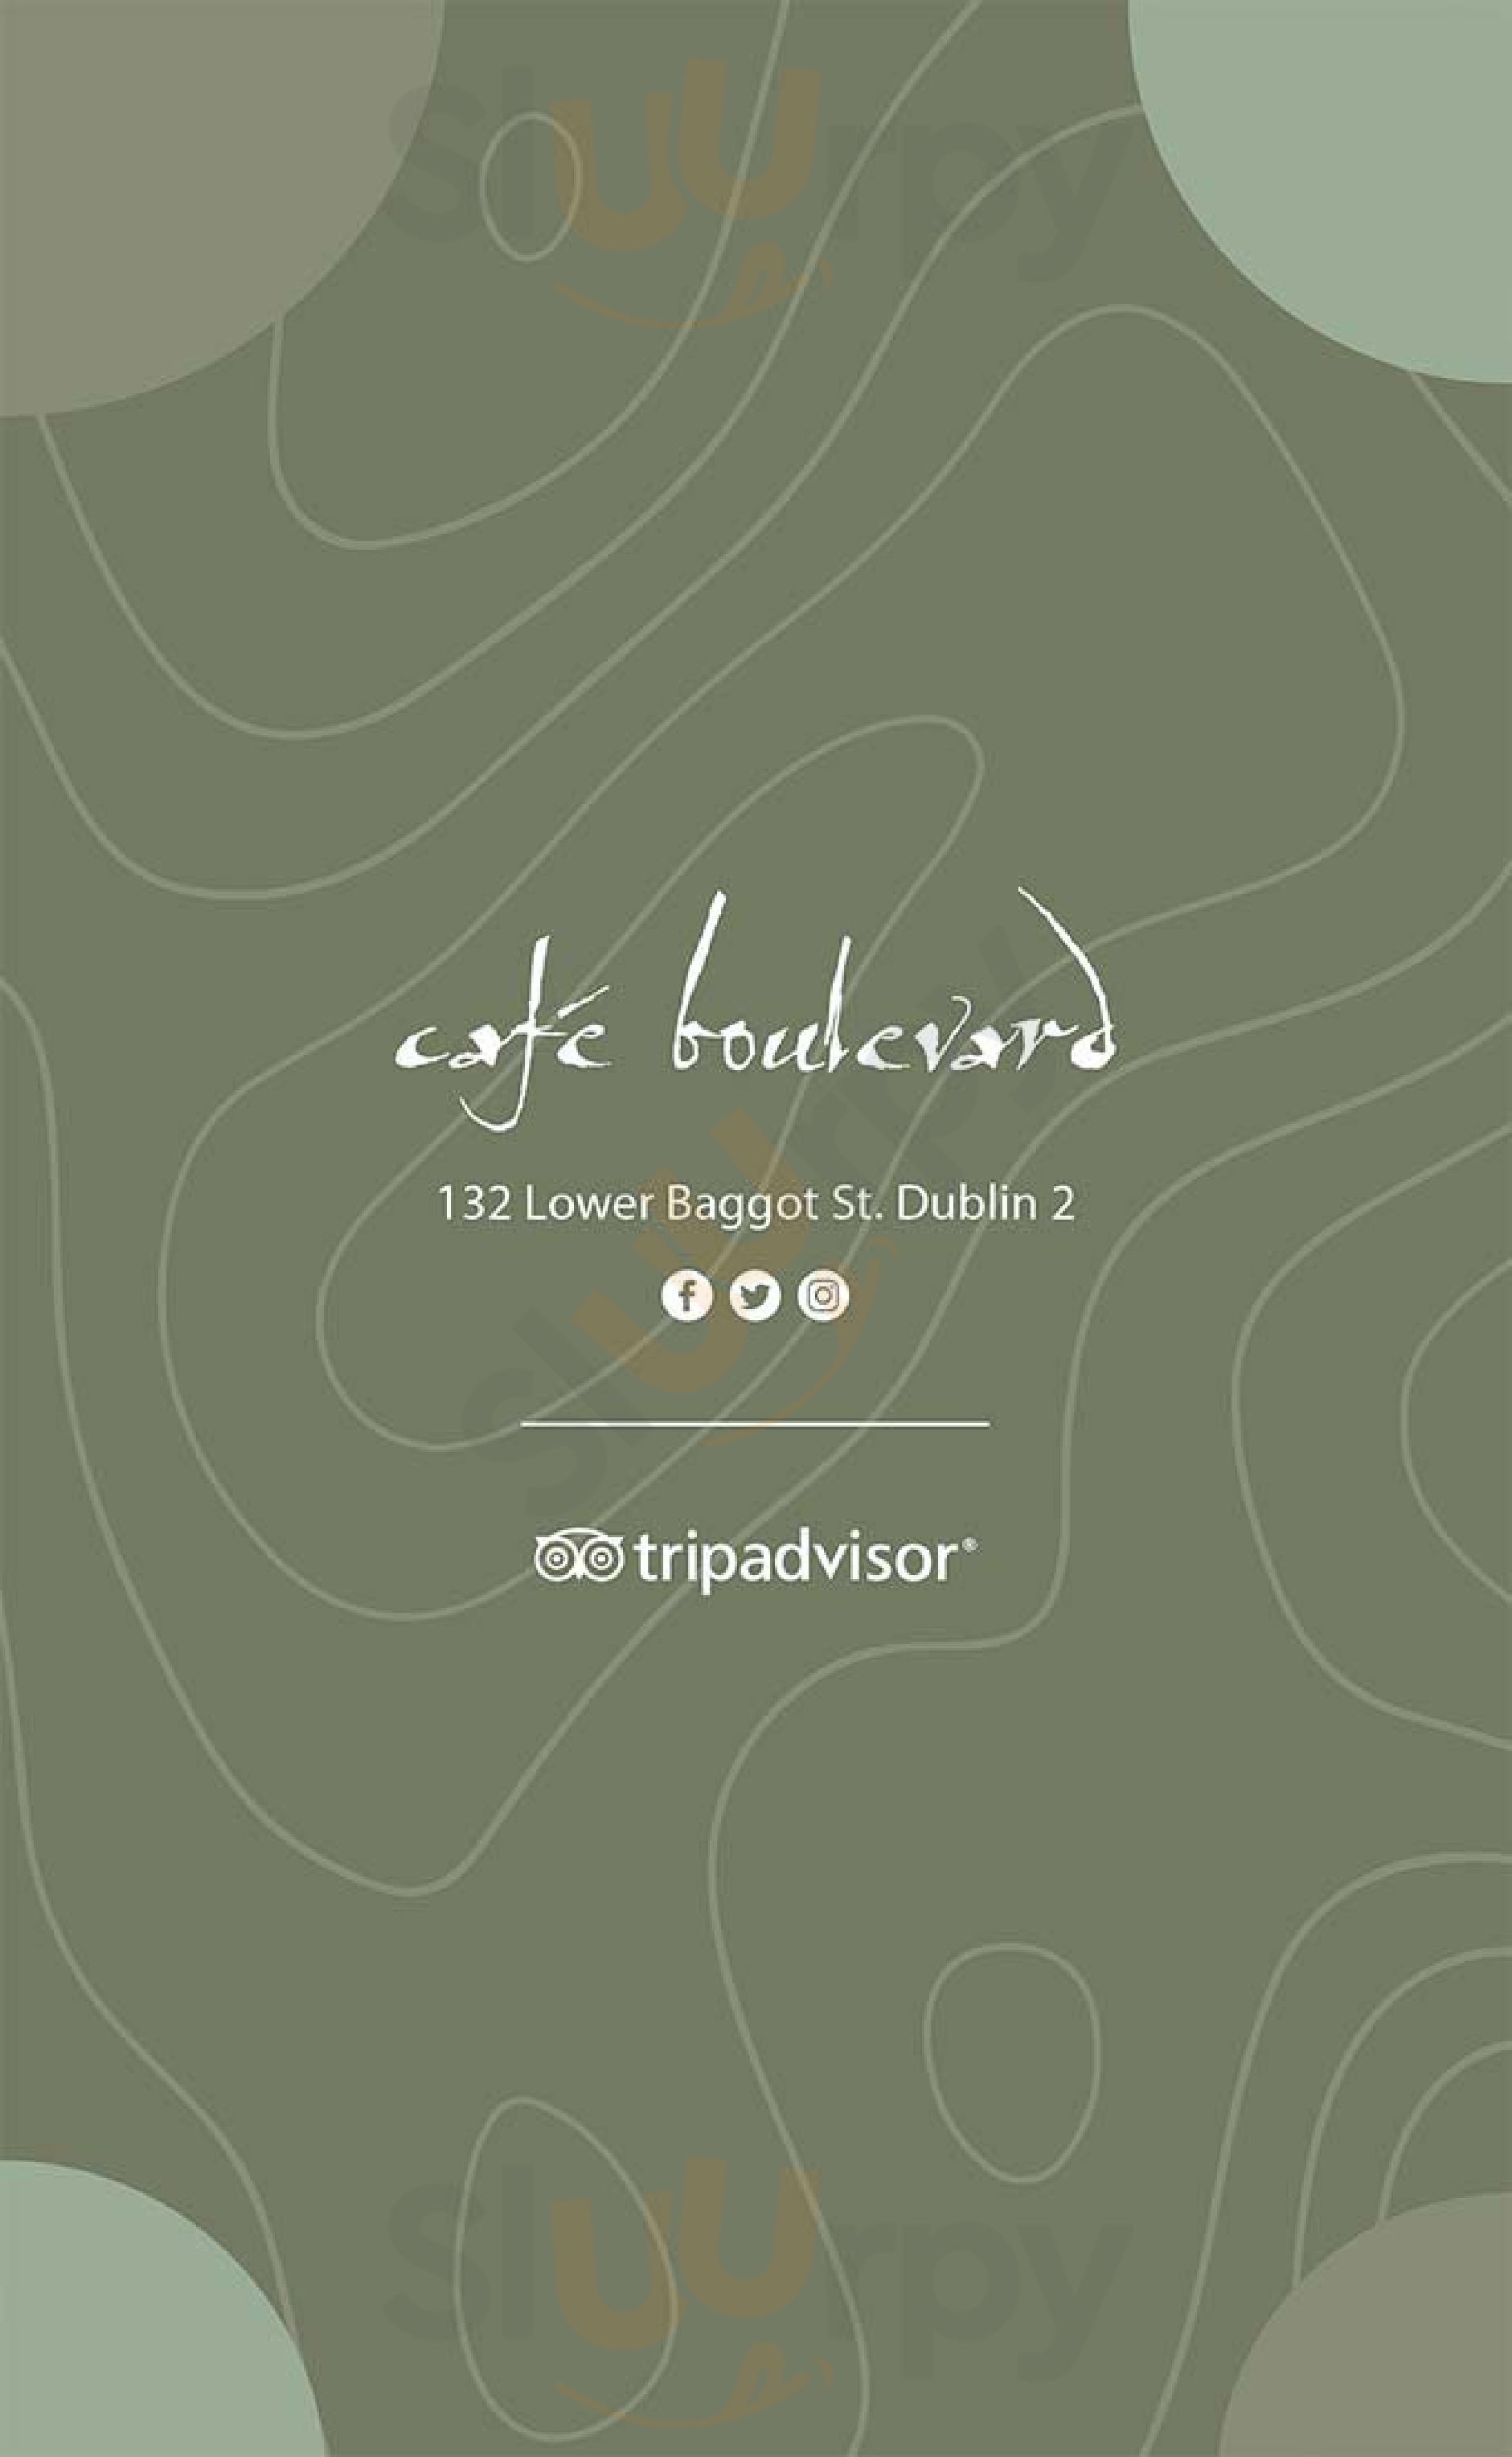 Cafe Boulevard Dublin Menu - 1